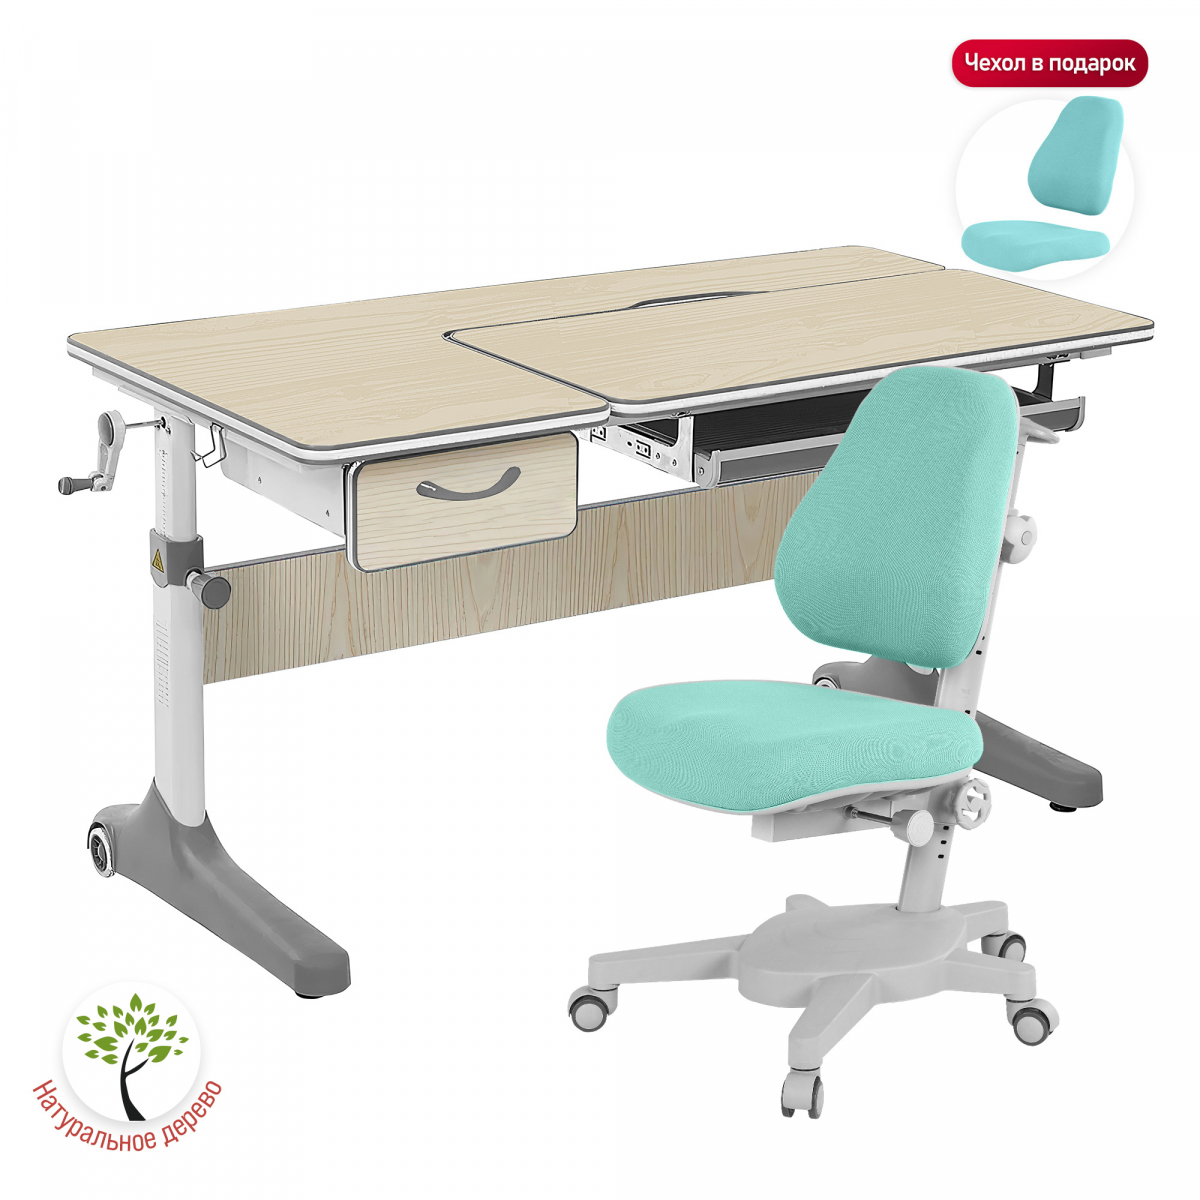 Комплект Anatomica Uniqa Lite парта + кресло клен/серый с креслом Armata цвета мятный